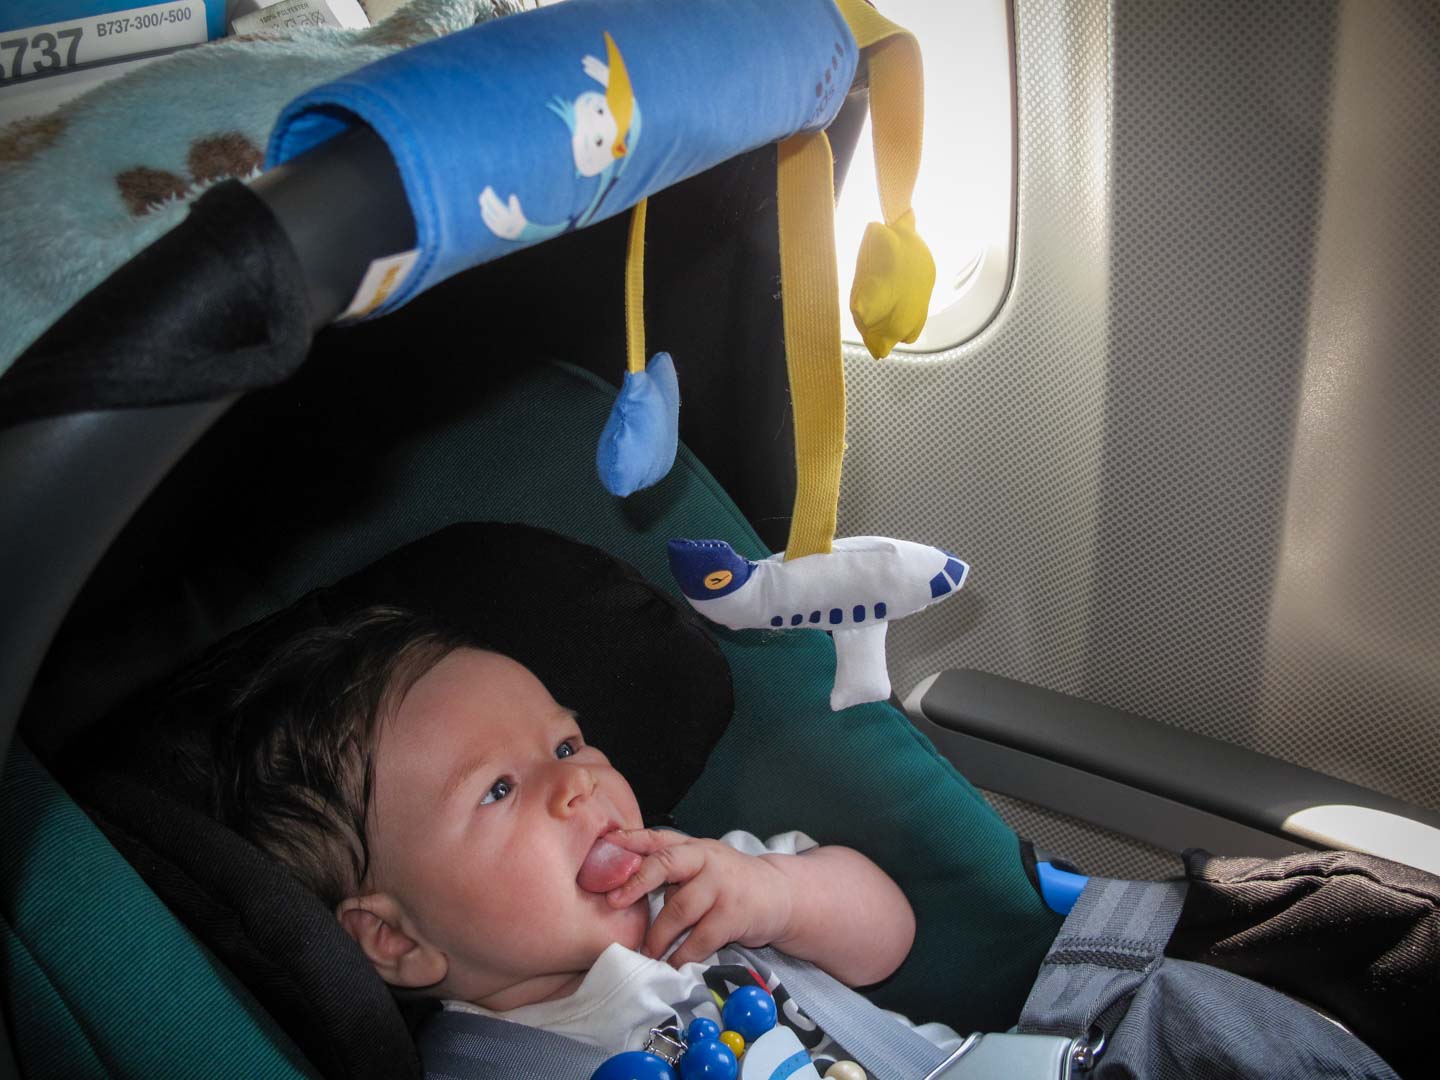 Kindersitz im Flugzeug - So funktioniert's. Sicher fliegen mit Kind.